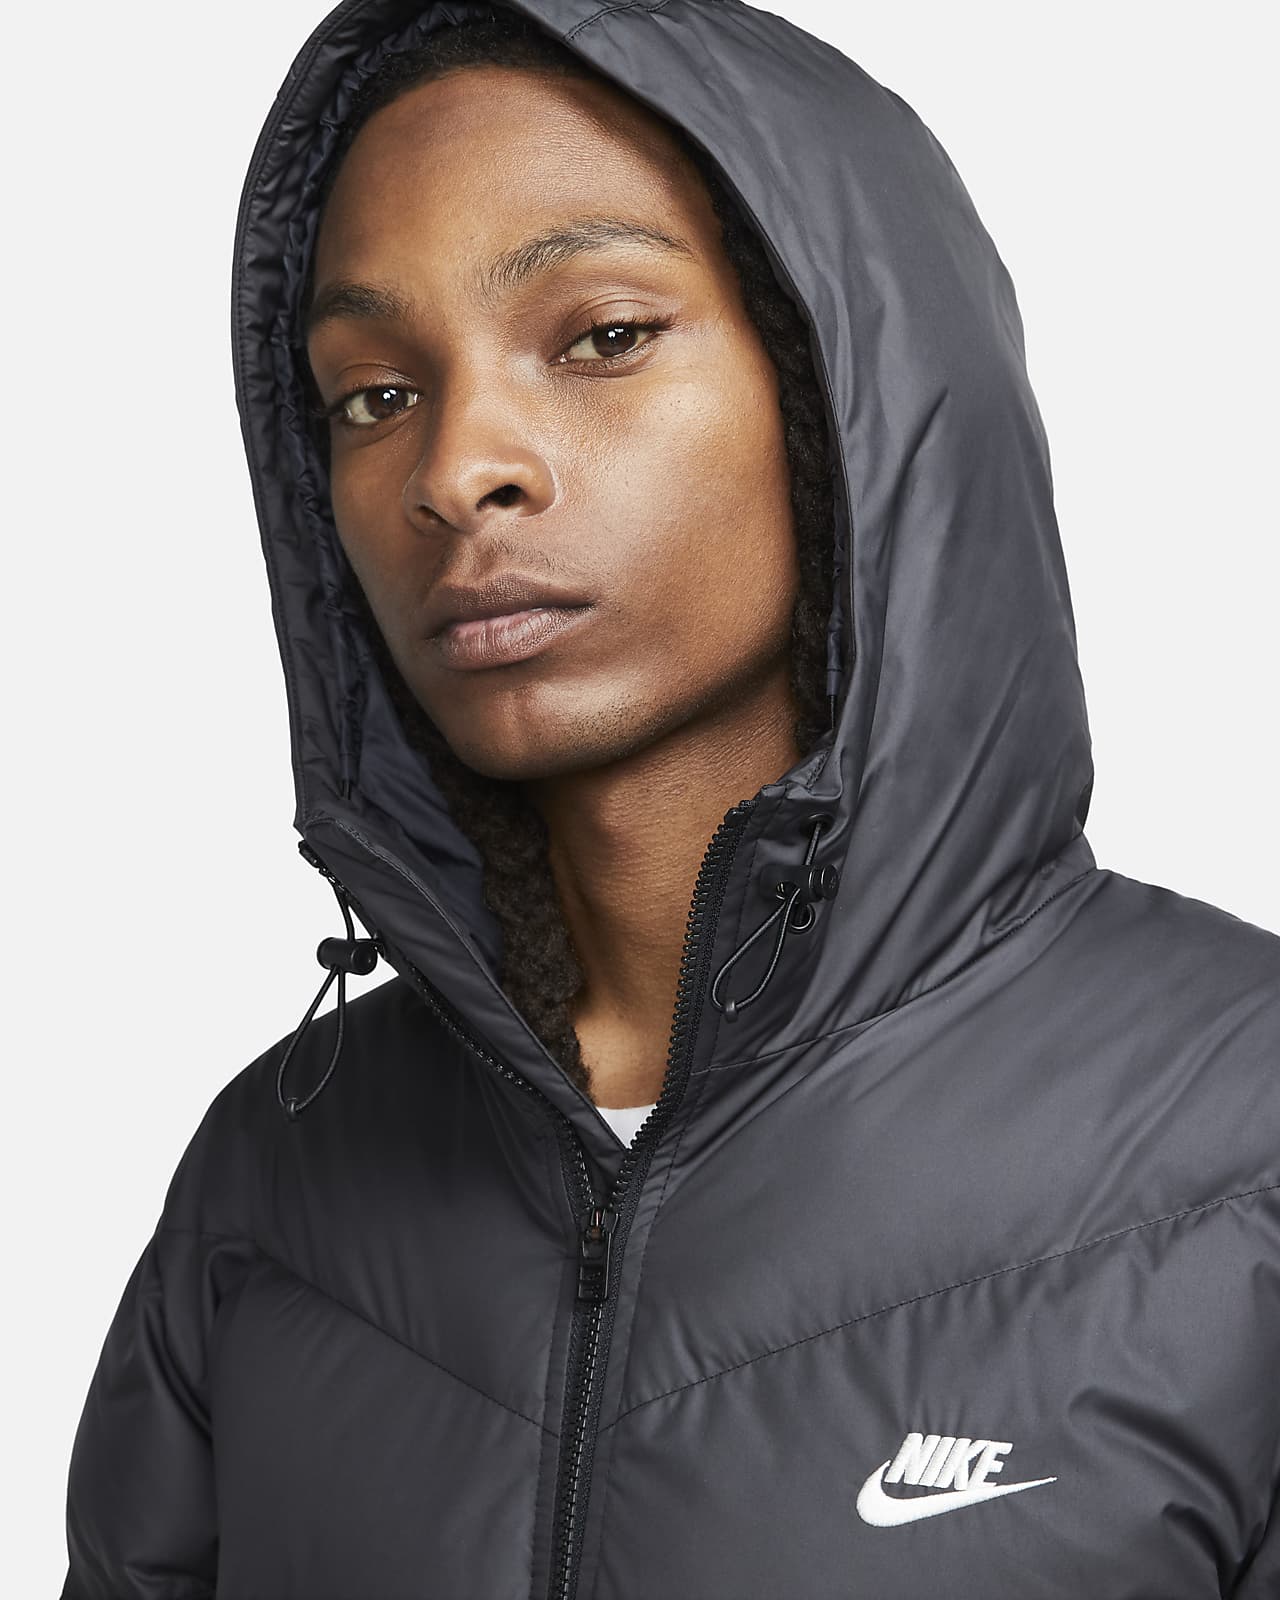 Luiheid partij Vast en zeker Nike Windrunner PrimaLoft® Men's Storm-FIT Hooded Parka Jacket. Nike LU